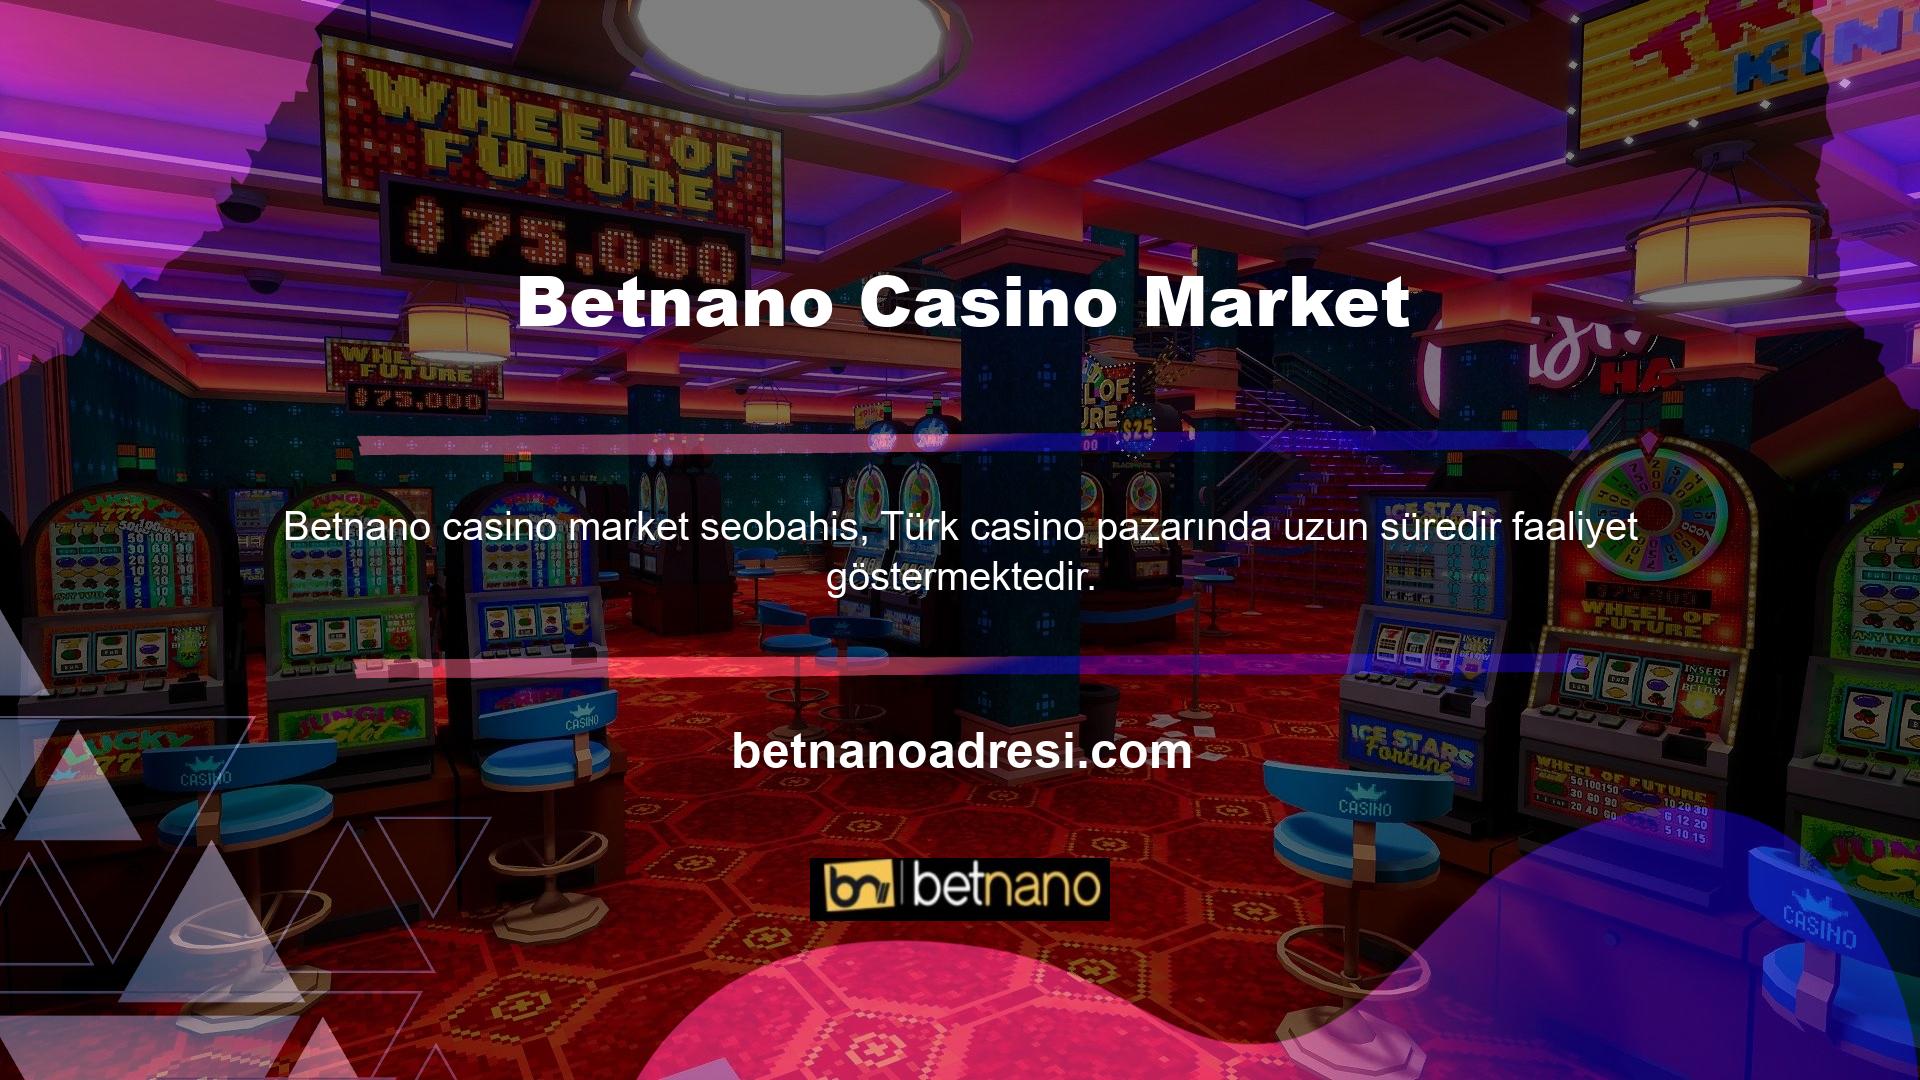 Bahis ve casino oyuncuları bu siteyi çok seviyor ve Betnano Casino Market sitesinde bu oyuncuların beğendiği bir bölüm var